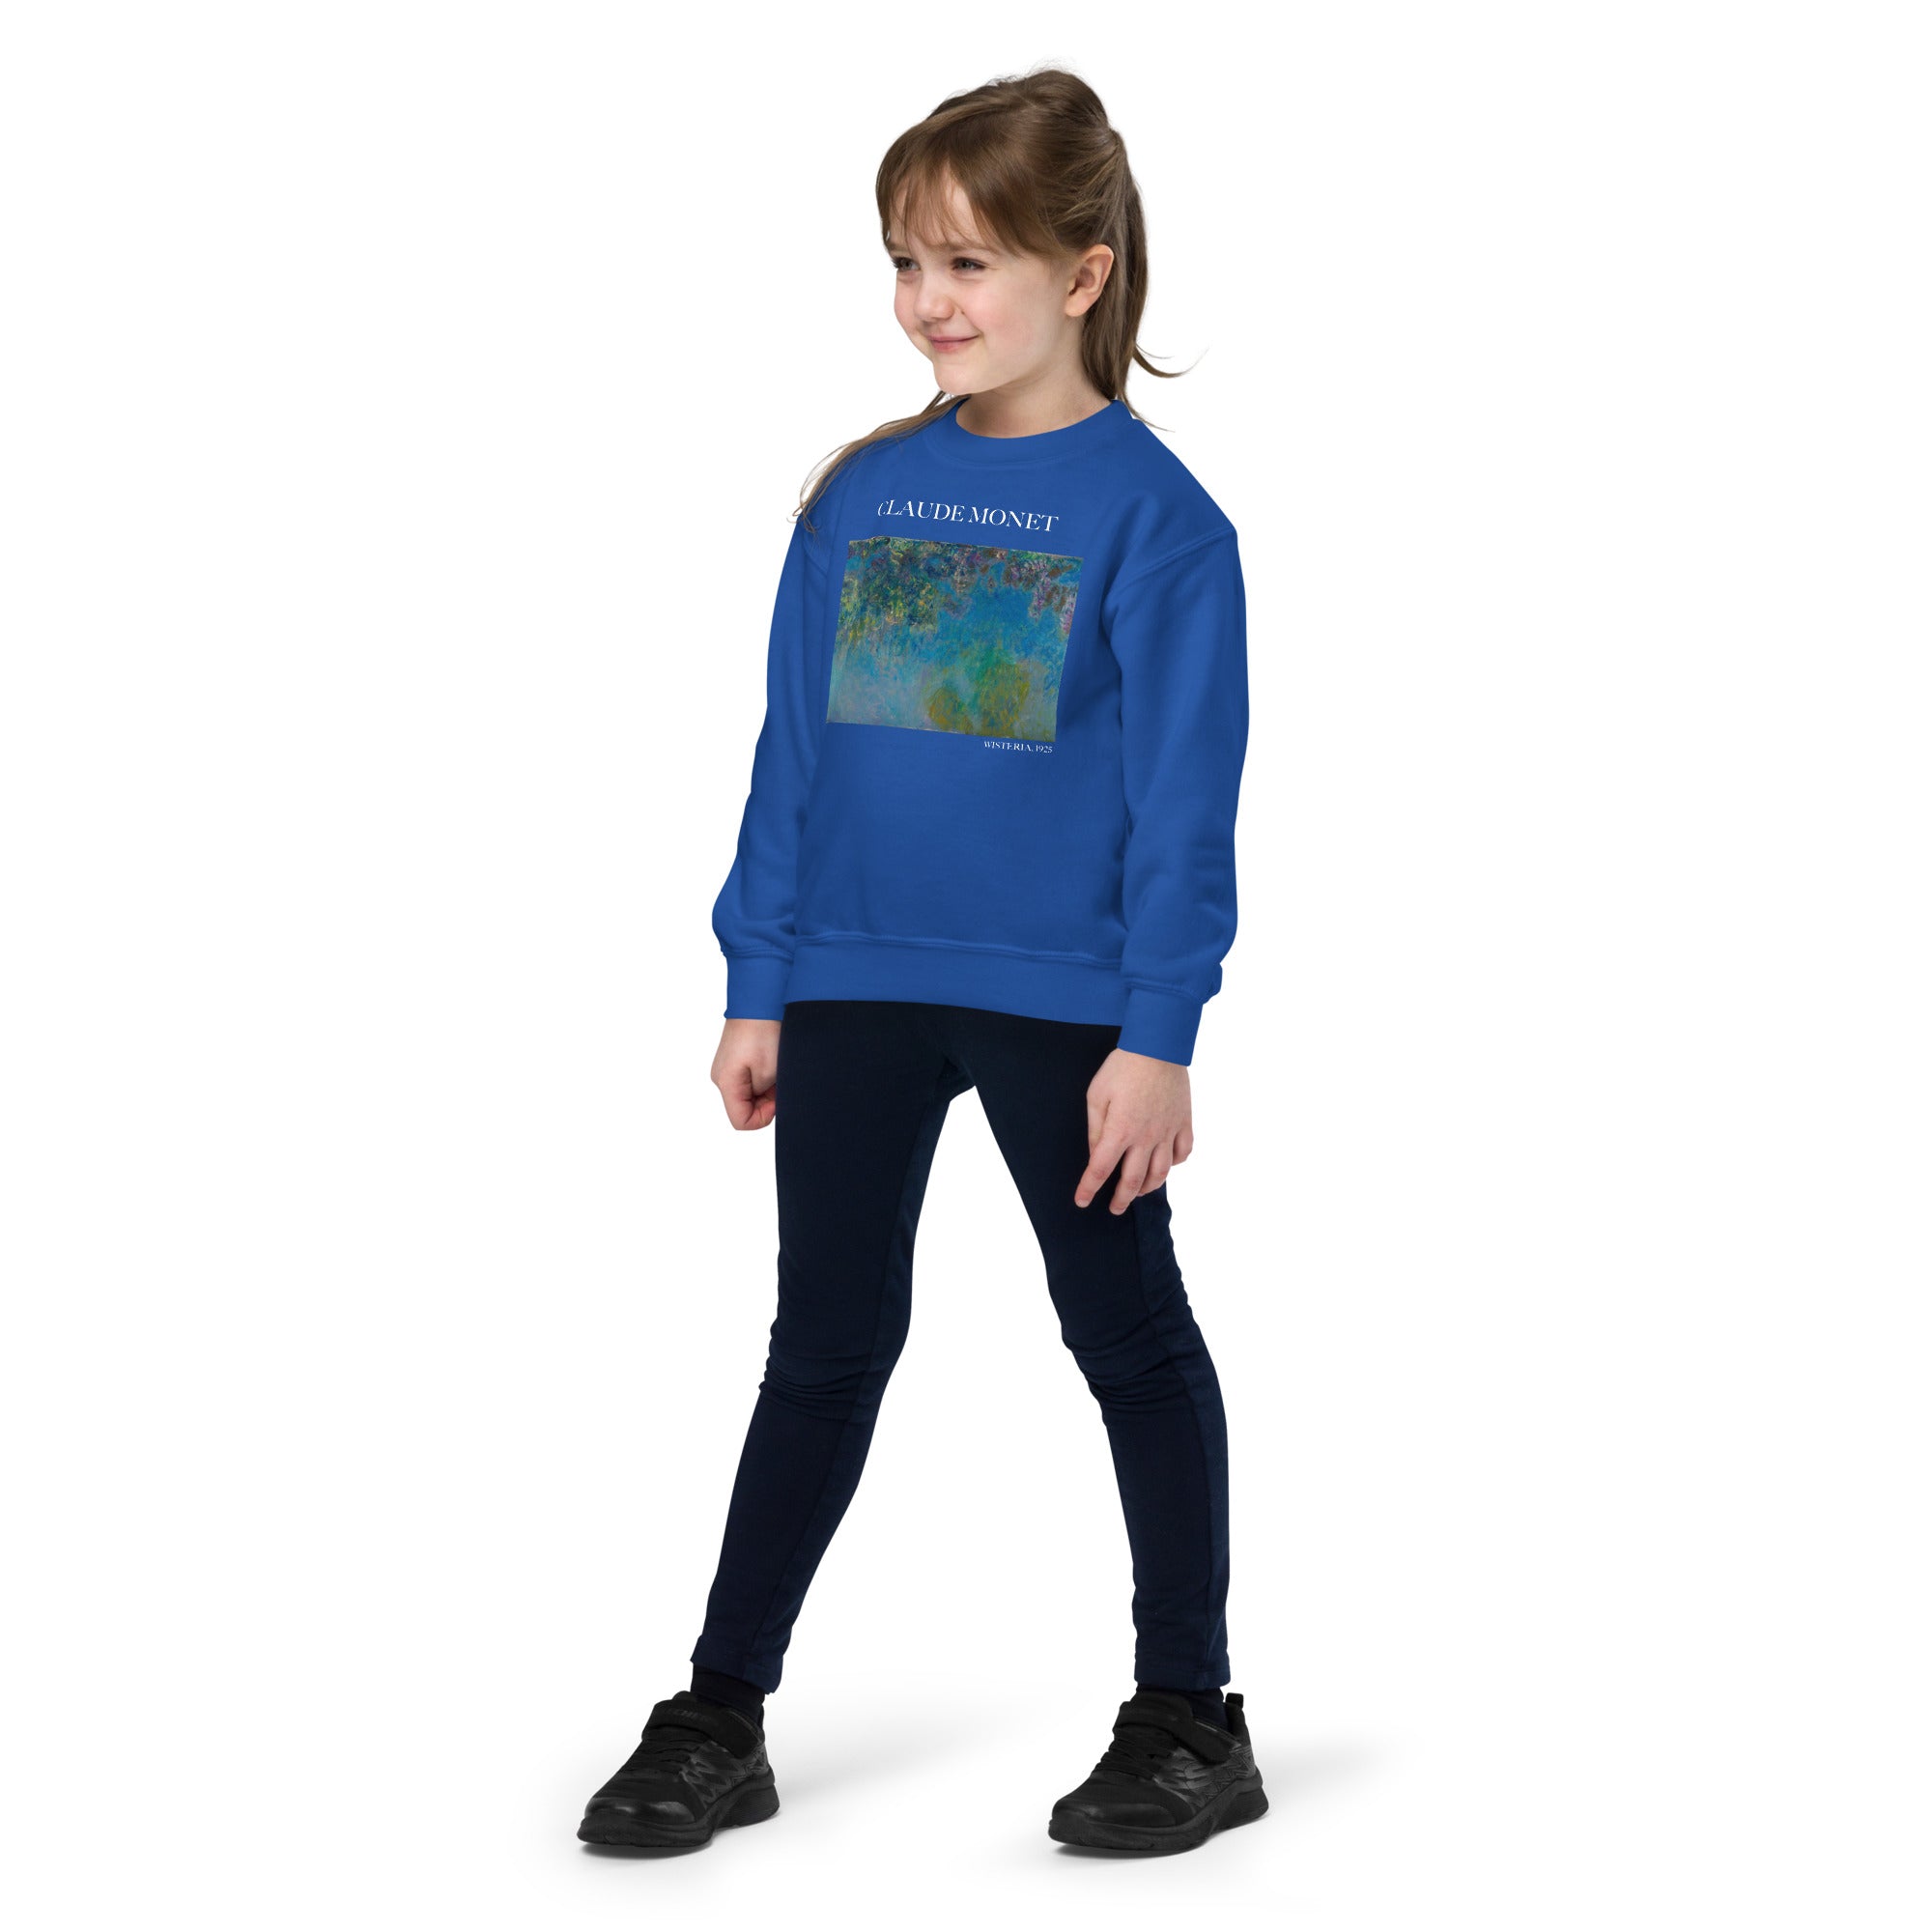 Claude Monet „Wisteria“ – berühmtes Gemälde – Rundhals-Sweatshirt | Premium-Kunst-Sweatshirt für Jugendliche